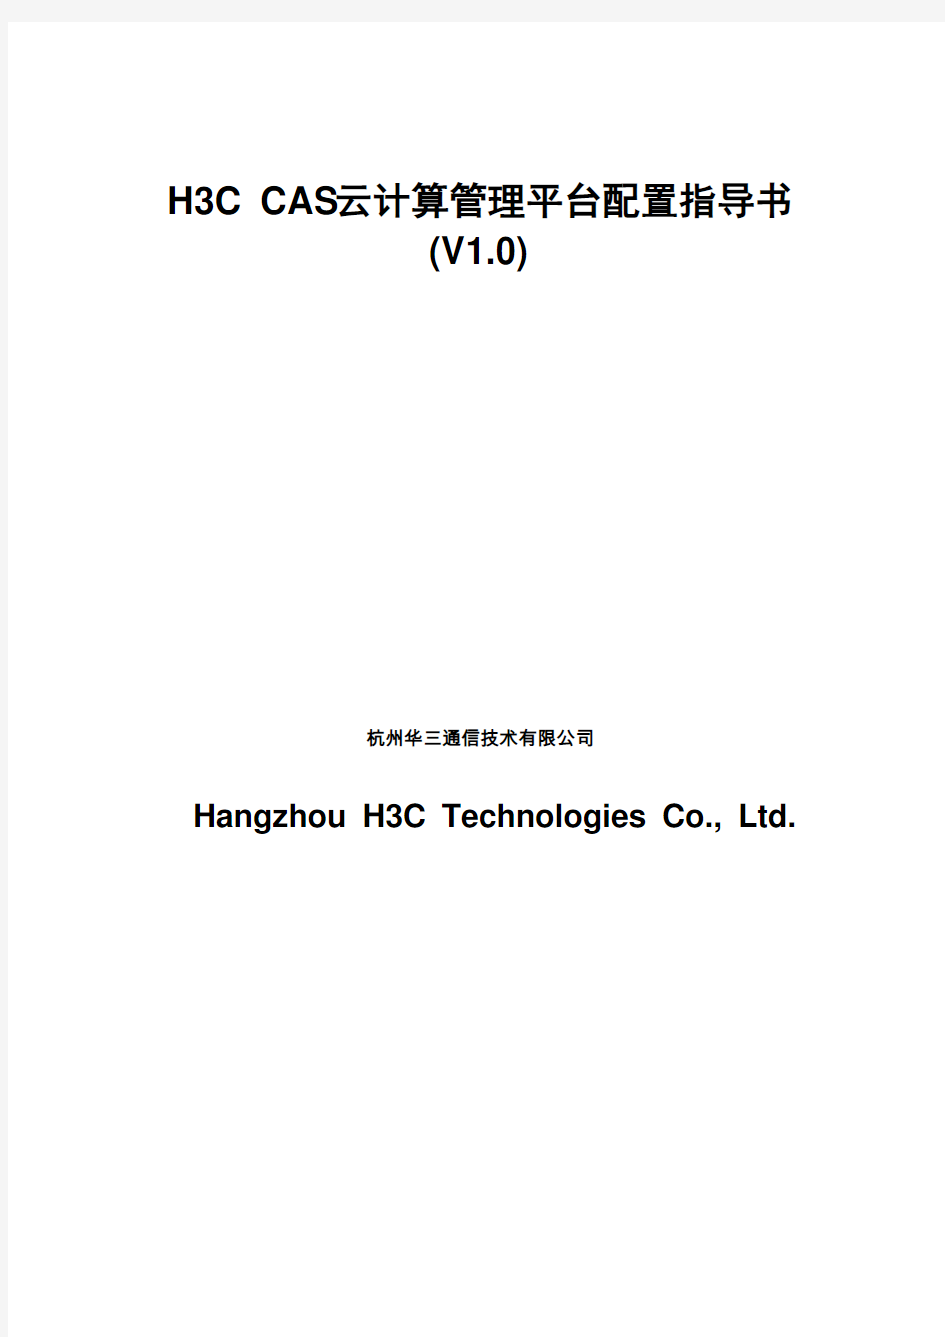 H3C-CAS云计算管理平台配置指导书V10